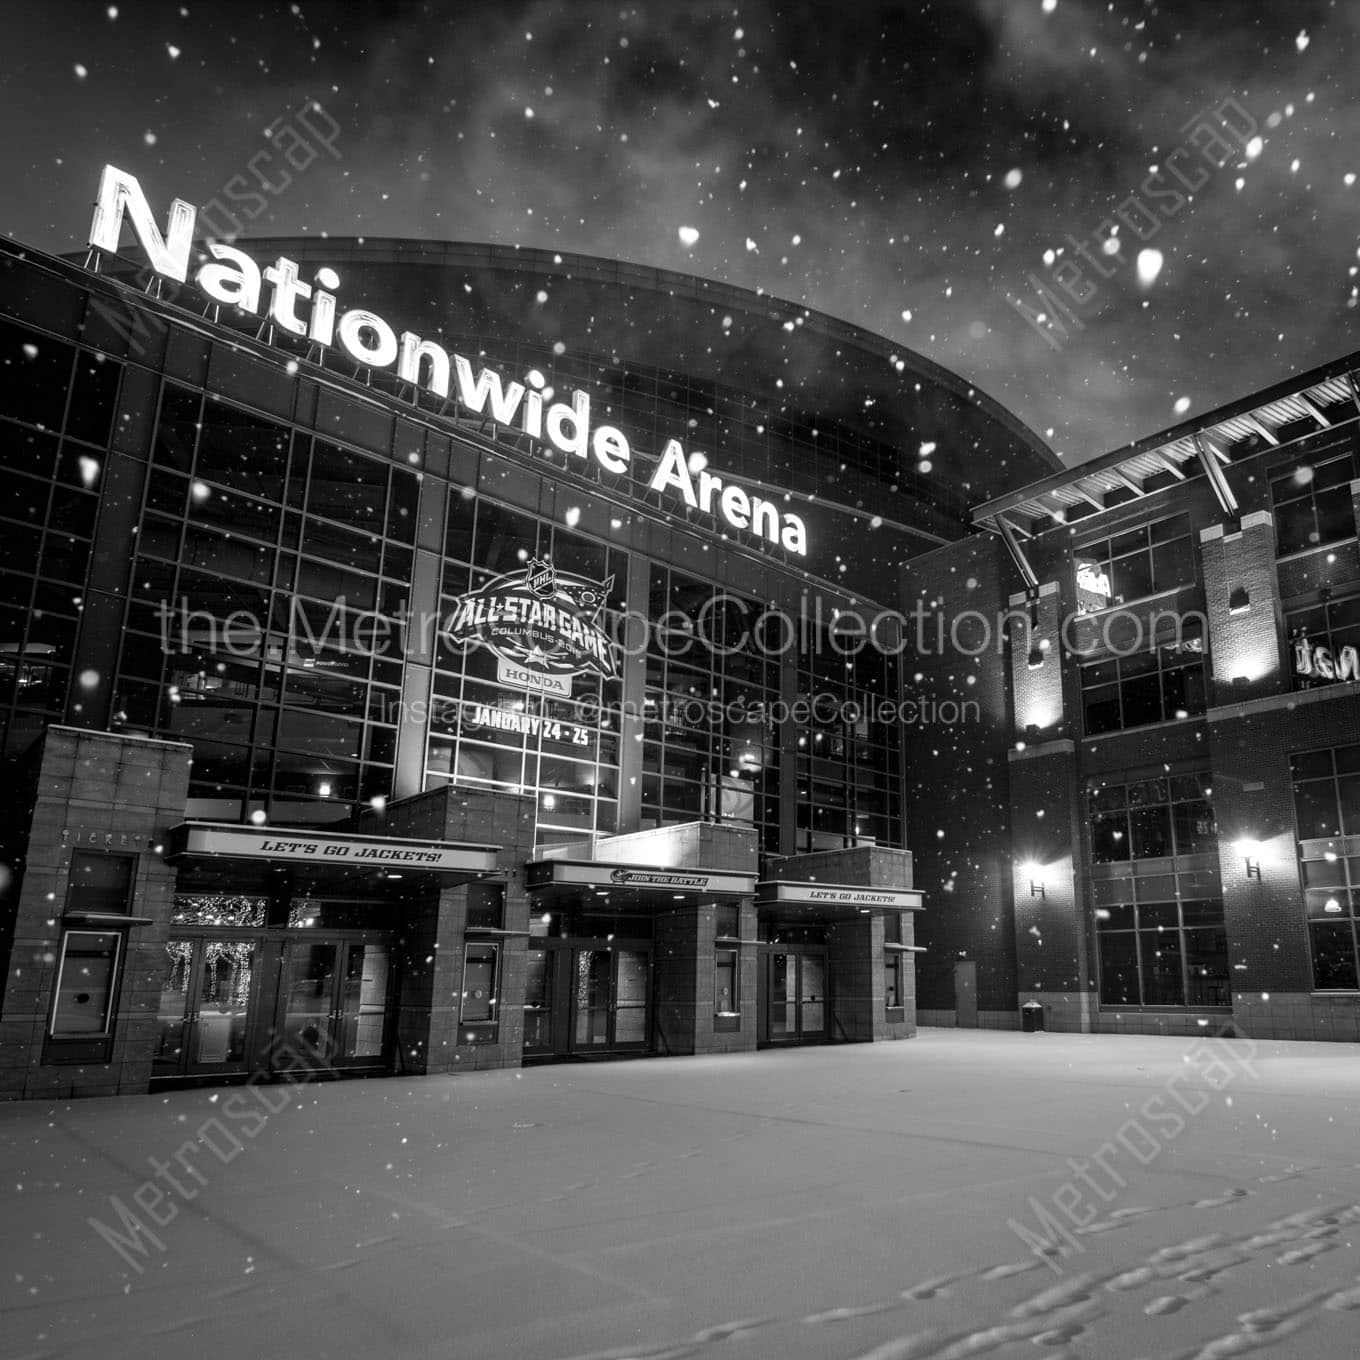 nationwide arena at night snowfall Black & White Wall Art